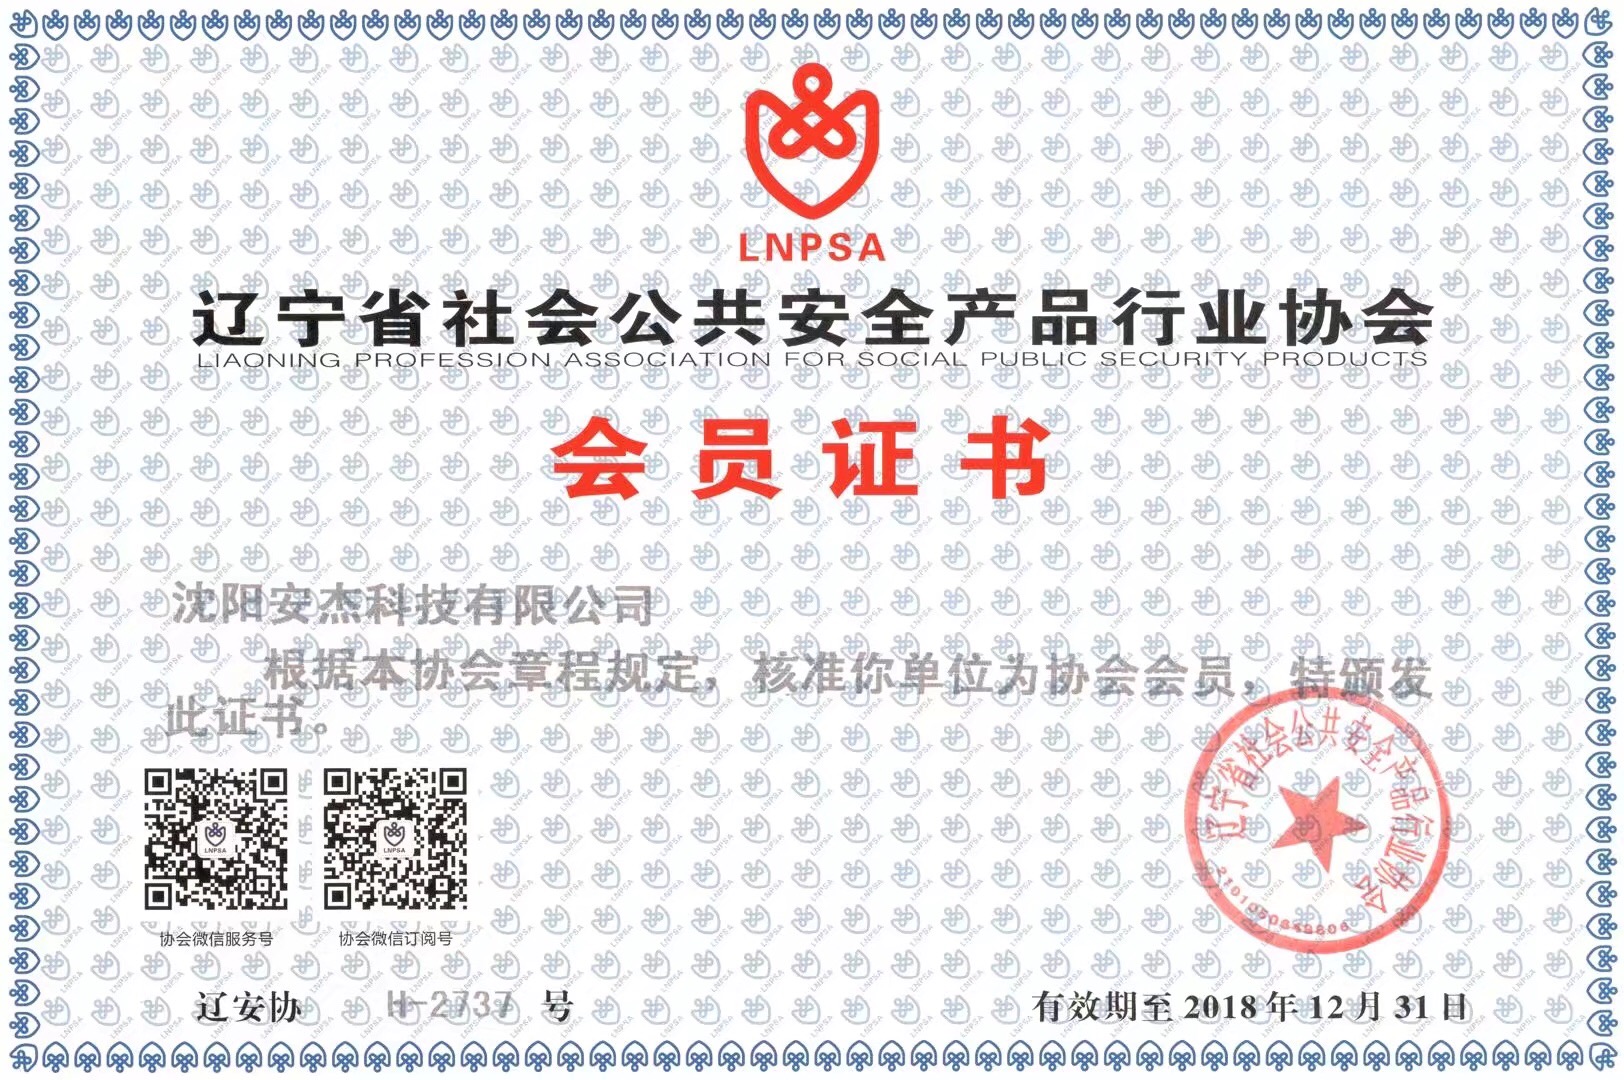 辽宁省社会公共安全产品行业协会会员证书  